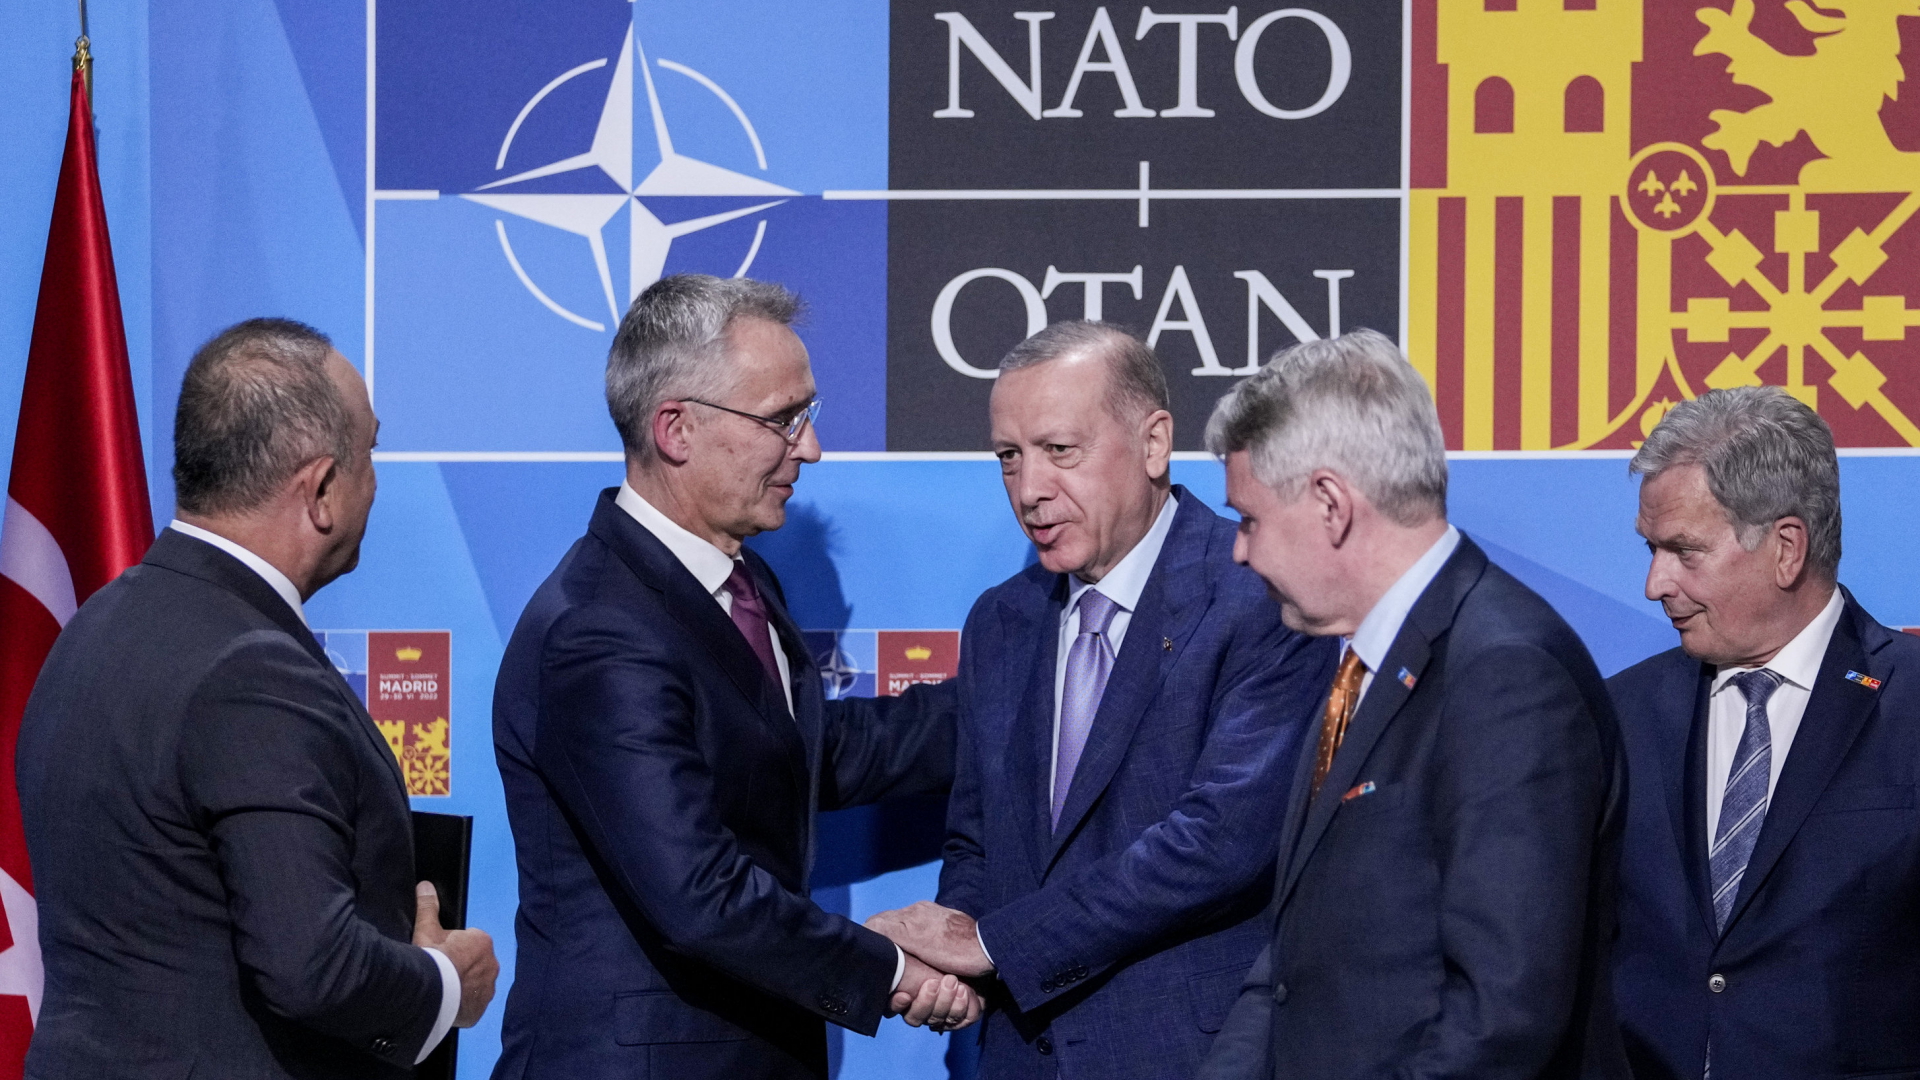 NATO-Generalsekretär Jens Stoltenberg schüttelt dem türkischen Präsident Recep Tayyip Erdogan die Hand, nachdem bei einem Treffen der Widerstand der Türkei gegen die NATO-Aufnahme Finnlands und Schwedens ausgeräumt werden konnte.